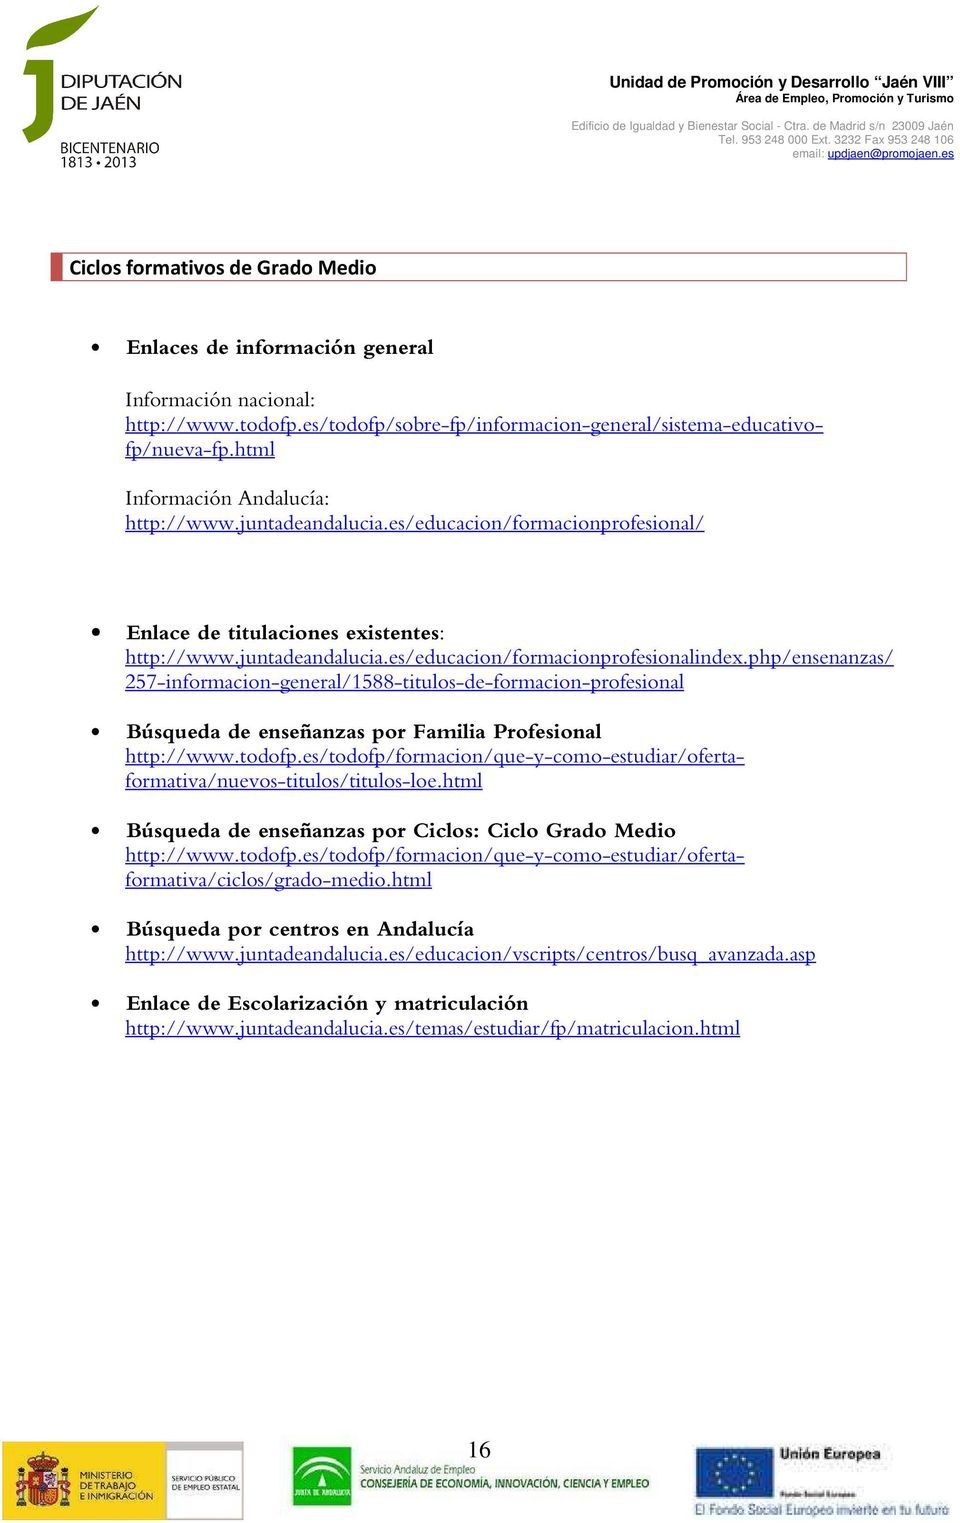 php/ensenanzas/ 257-informacion-general/1588-titulos-de-formacion-profesional Búsqueda de enseñanzas por Familia Profesional http://www.todofp.